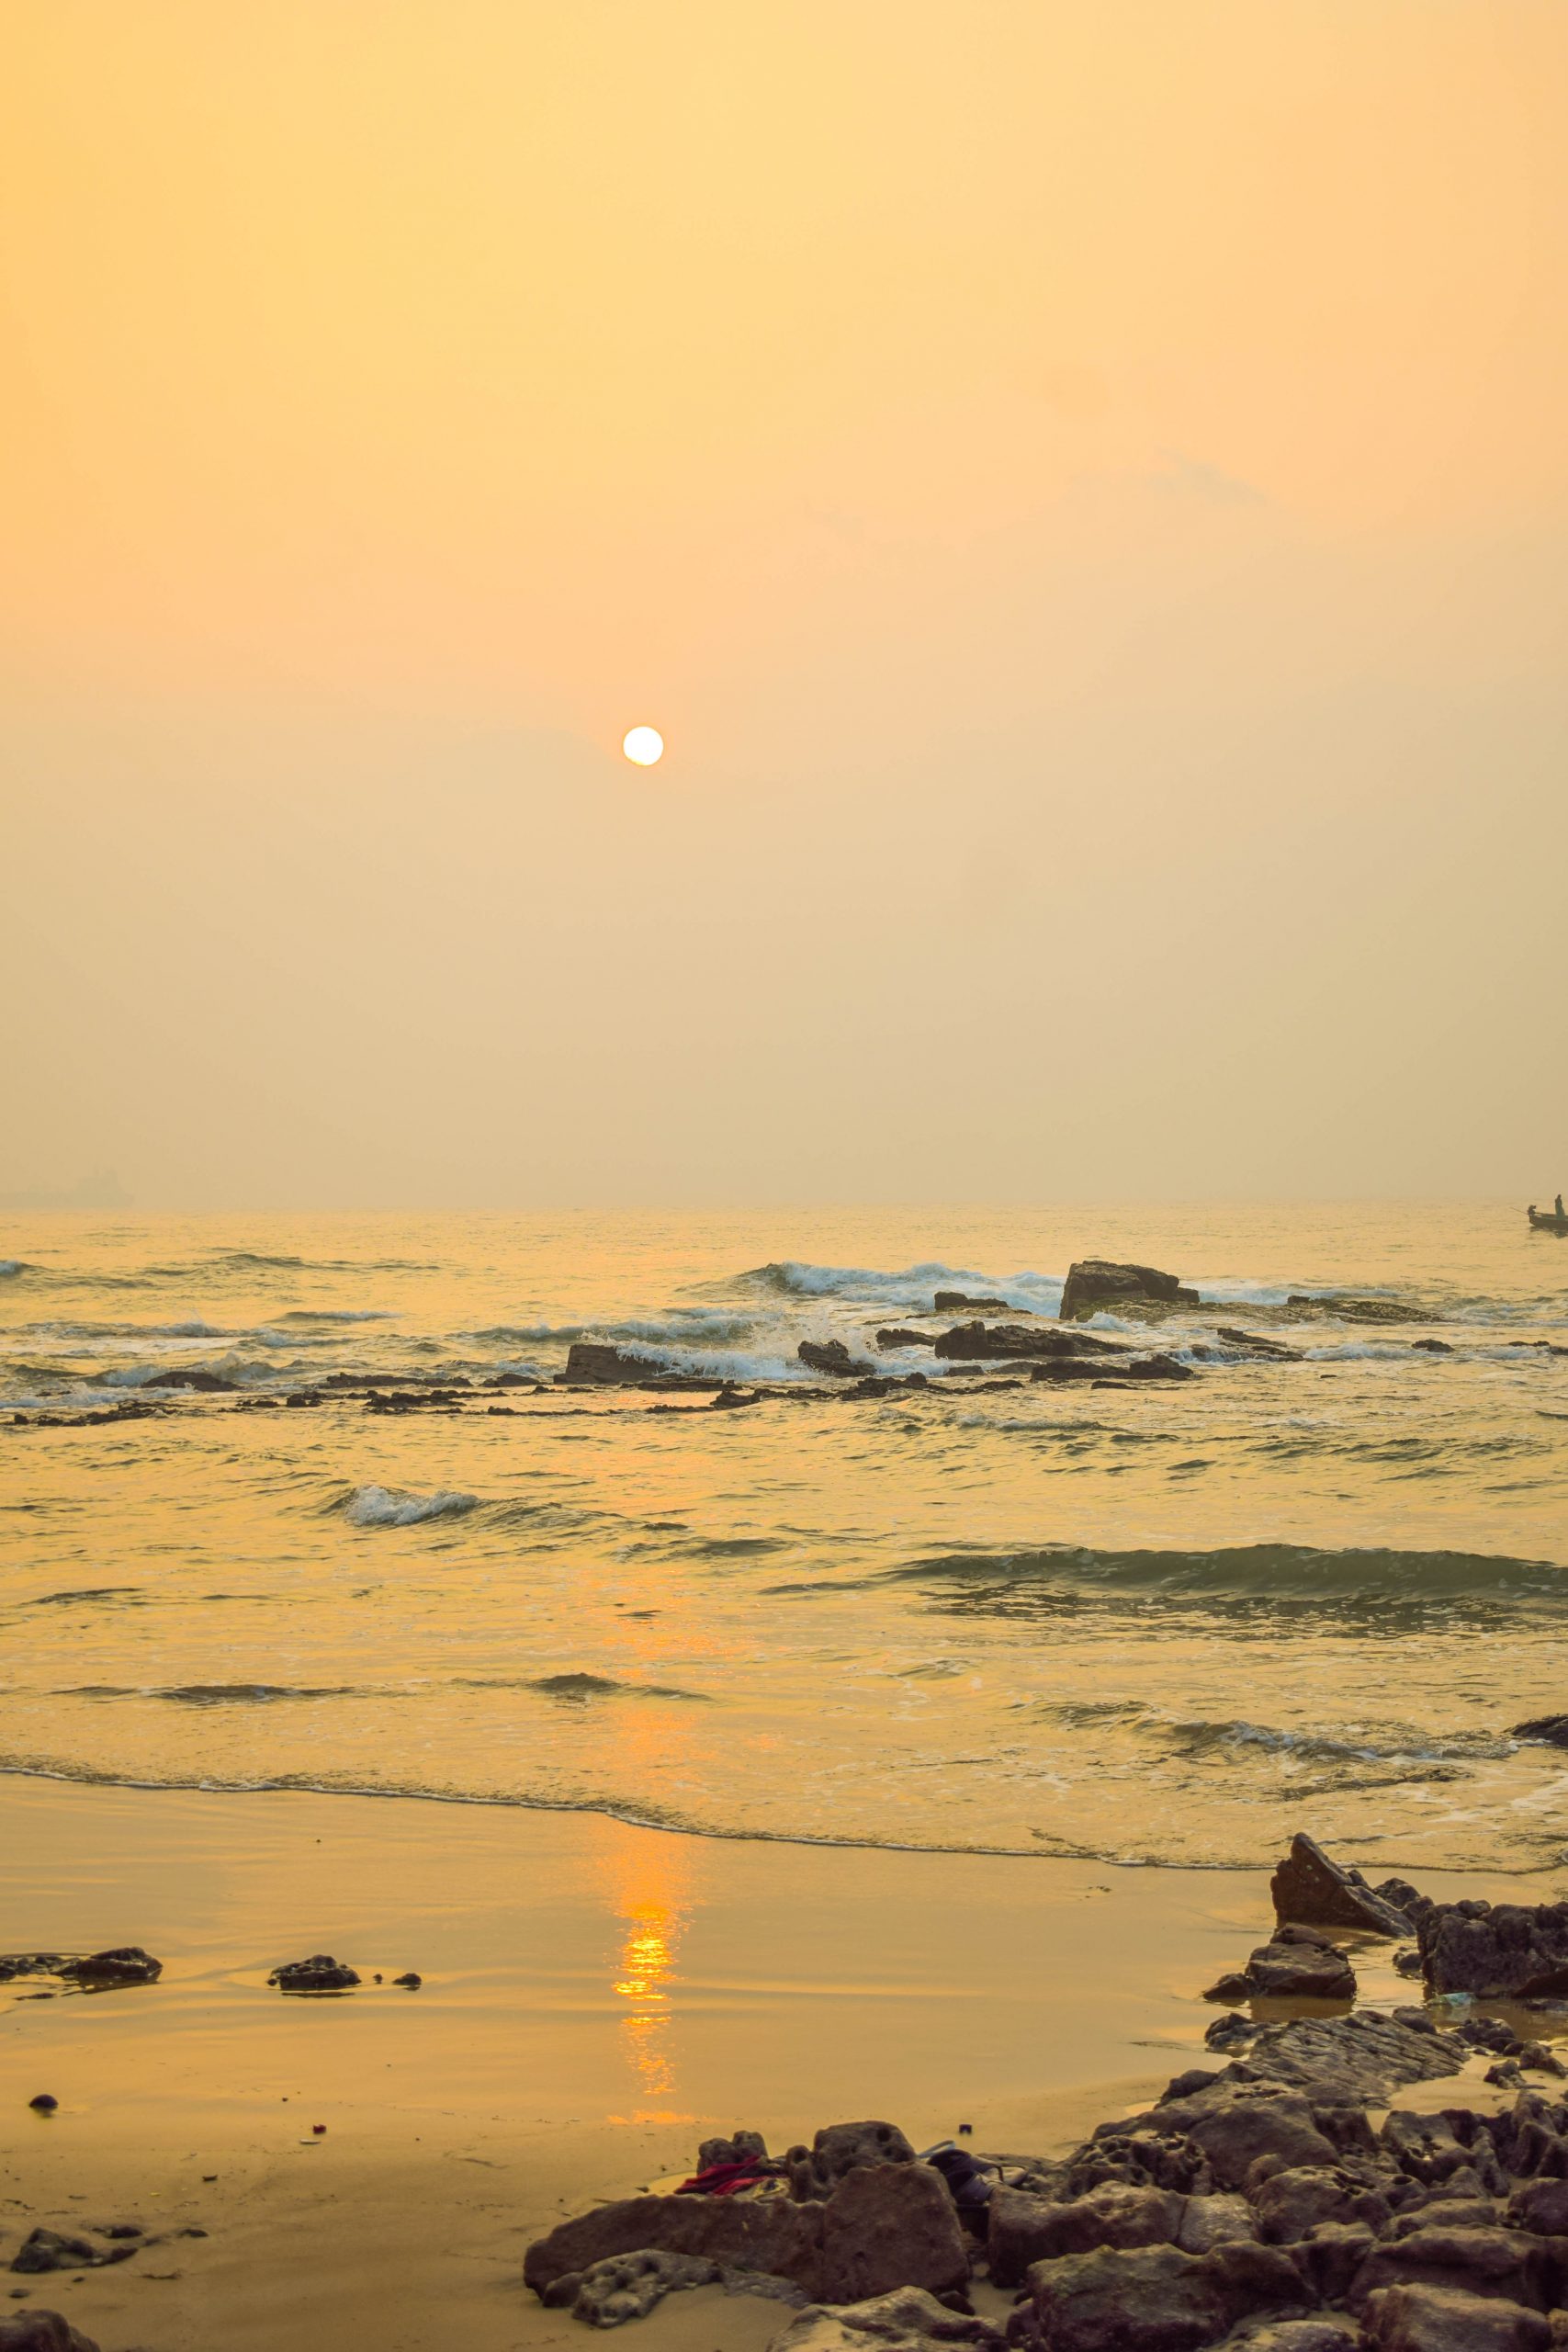 Rushikonda beach in Andhra Pradesh